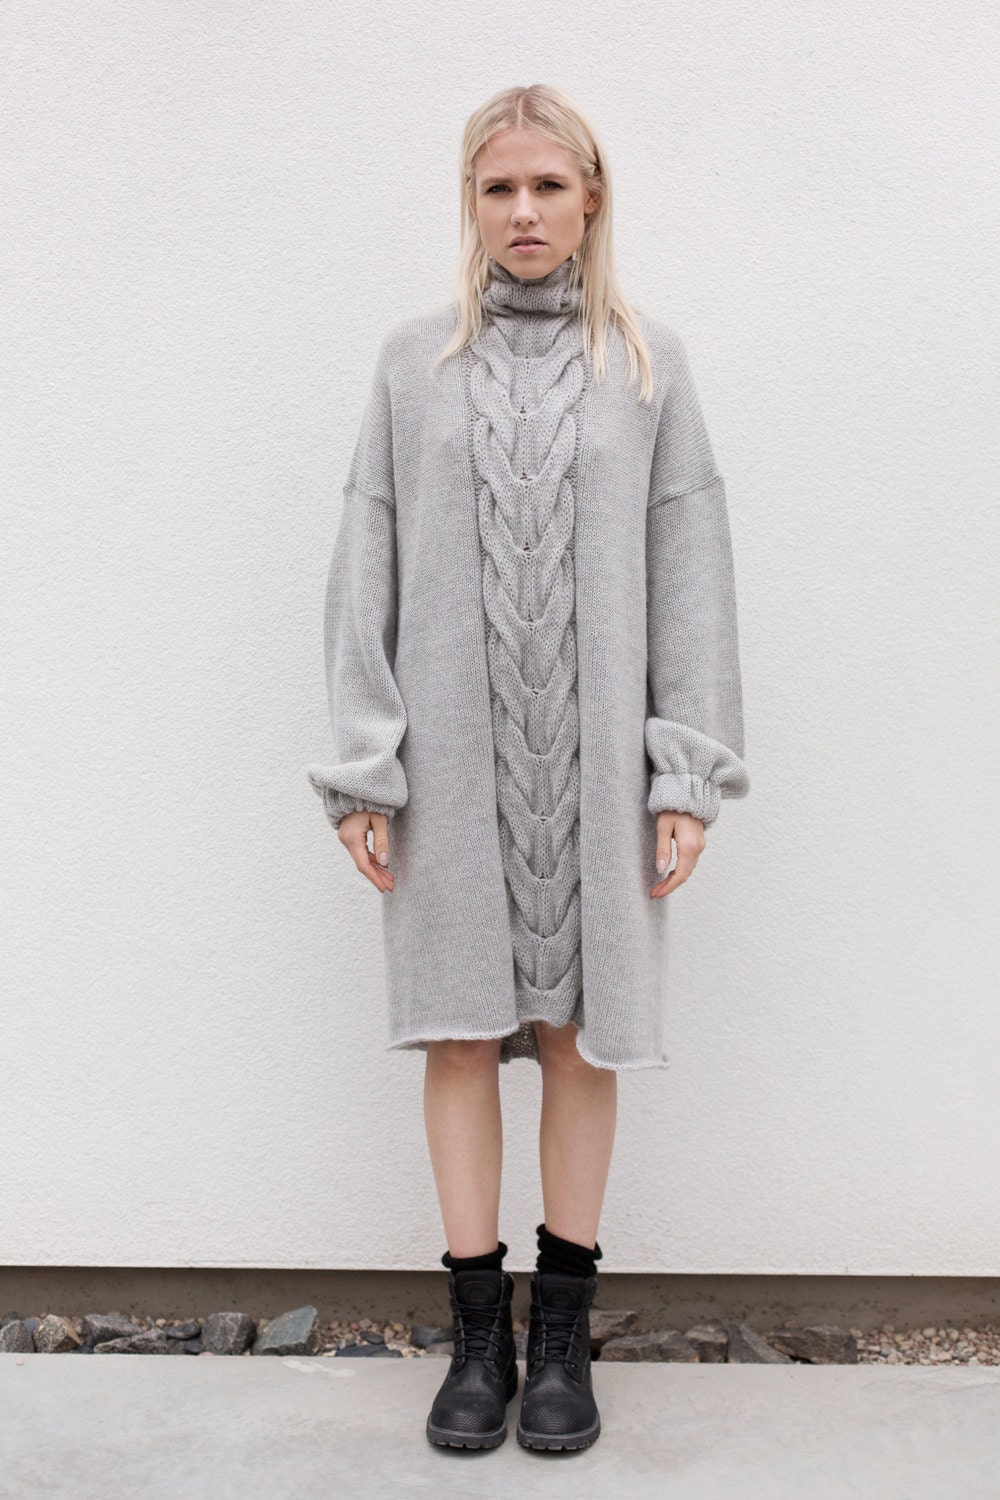 Aesthetic clothing robe dress Tunic dress minimalist | Etsy